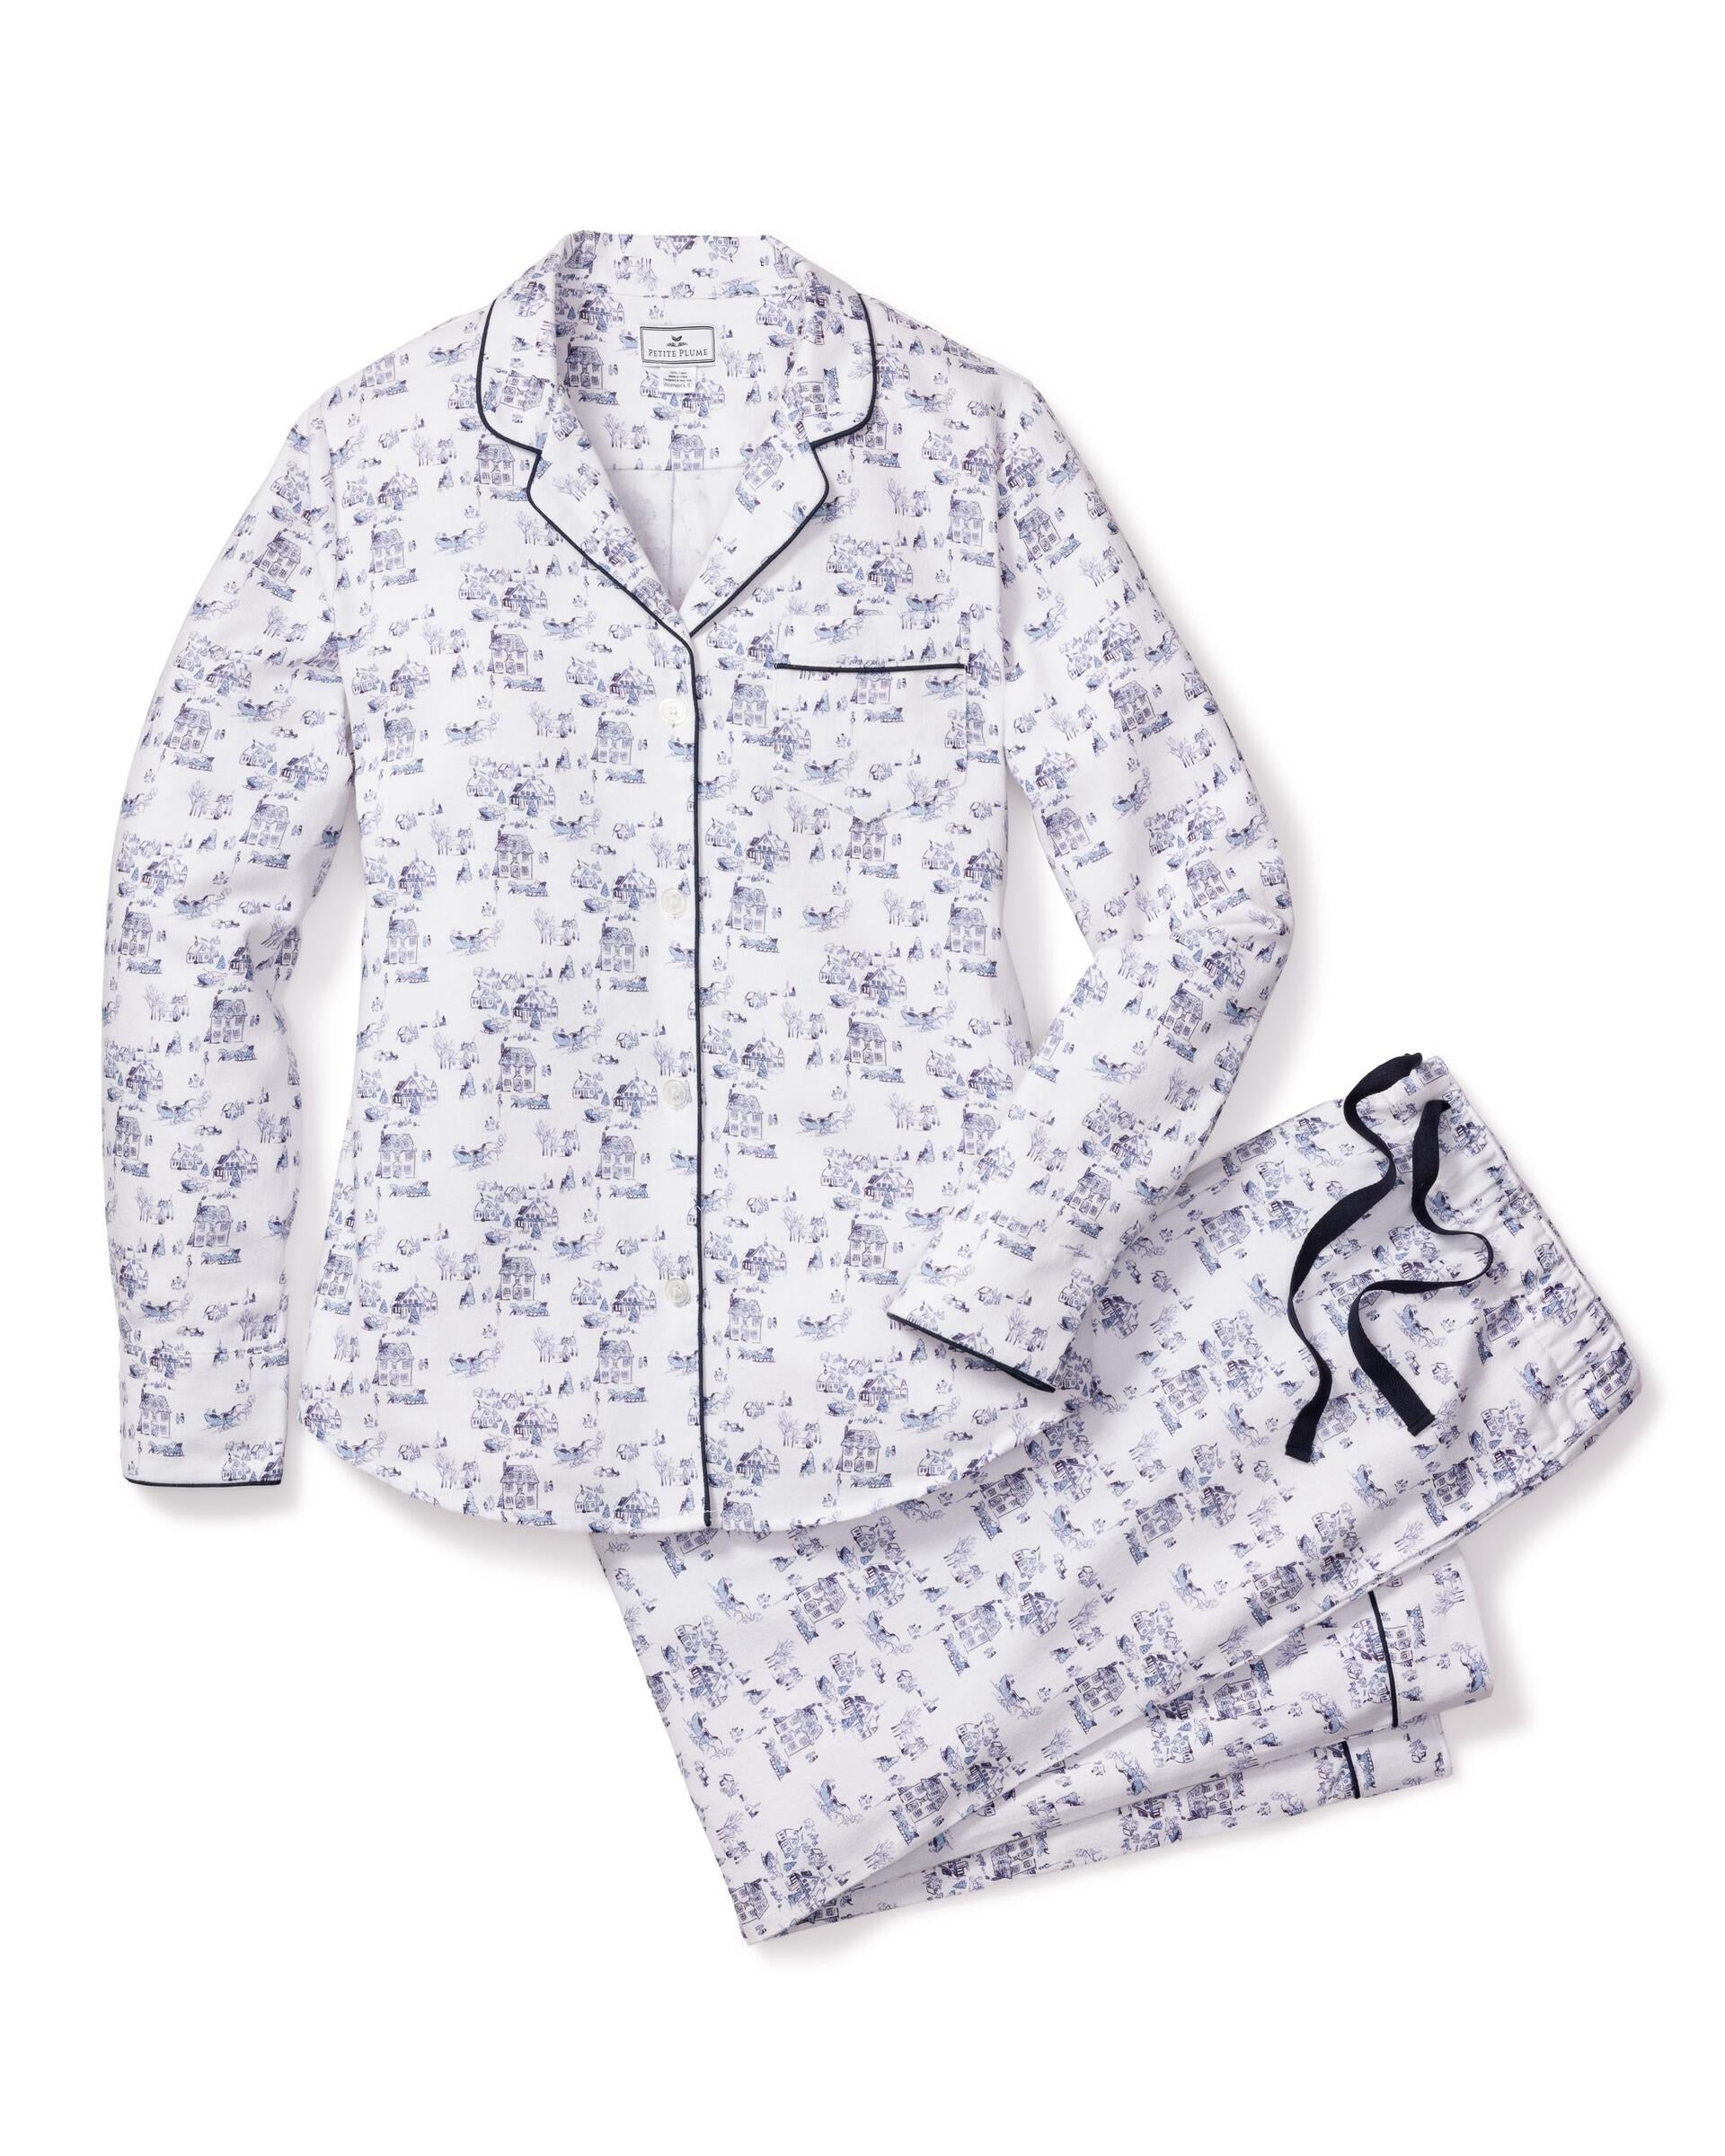 Winter Vignette Pyjama Set - Petite Plume